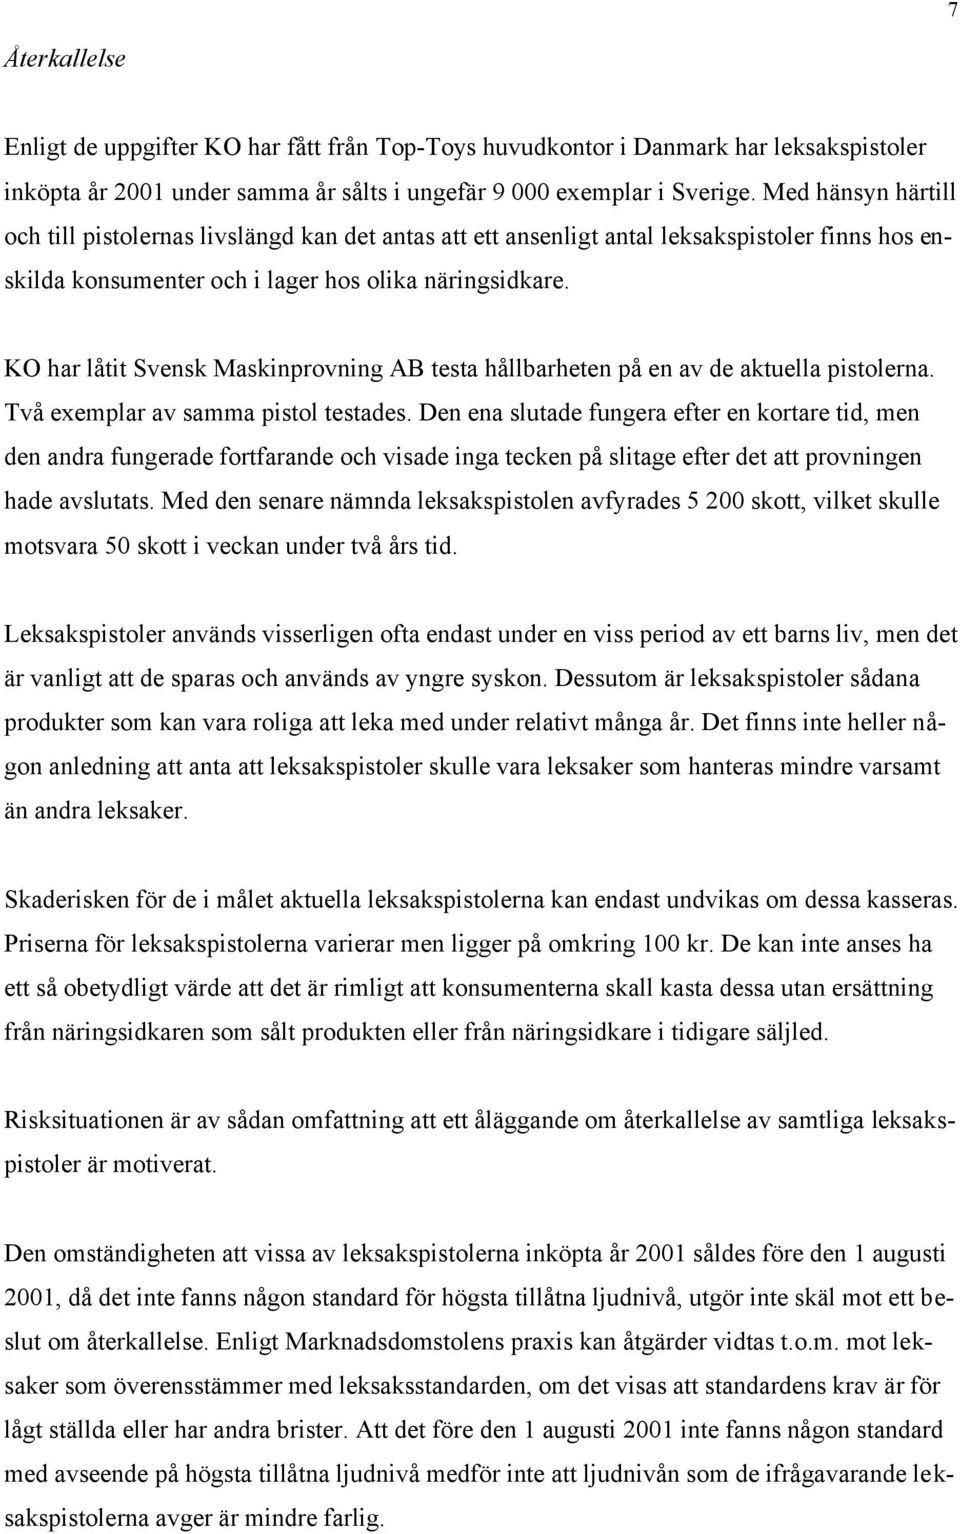 KO har låtit Svensk Maskinprovning AB testa hållbarheten på en av de aktuella pistolerna. Två exemplar av samma pistol testades.